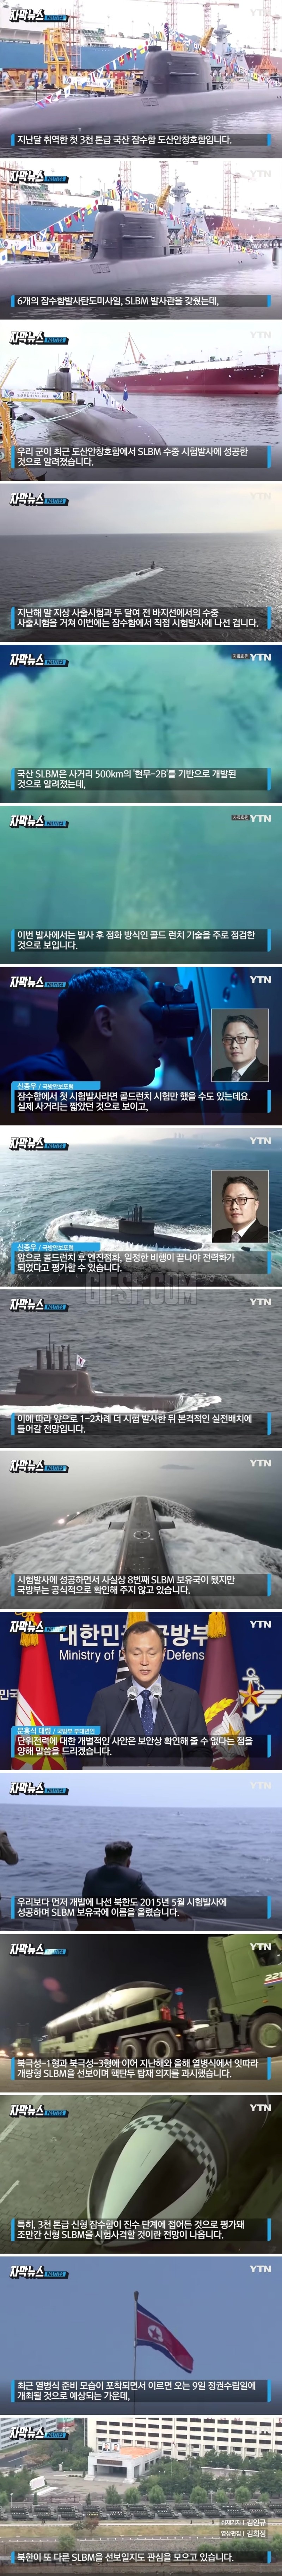 은밀성·파괴력 가진 미사일 .한국 세계 8번째 보유국 달성.jpg